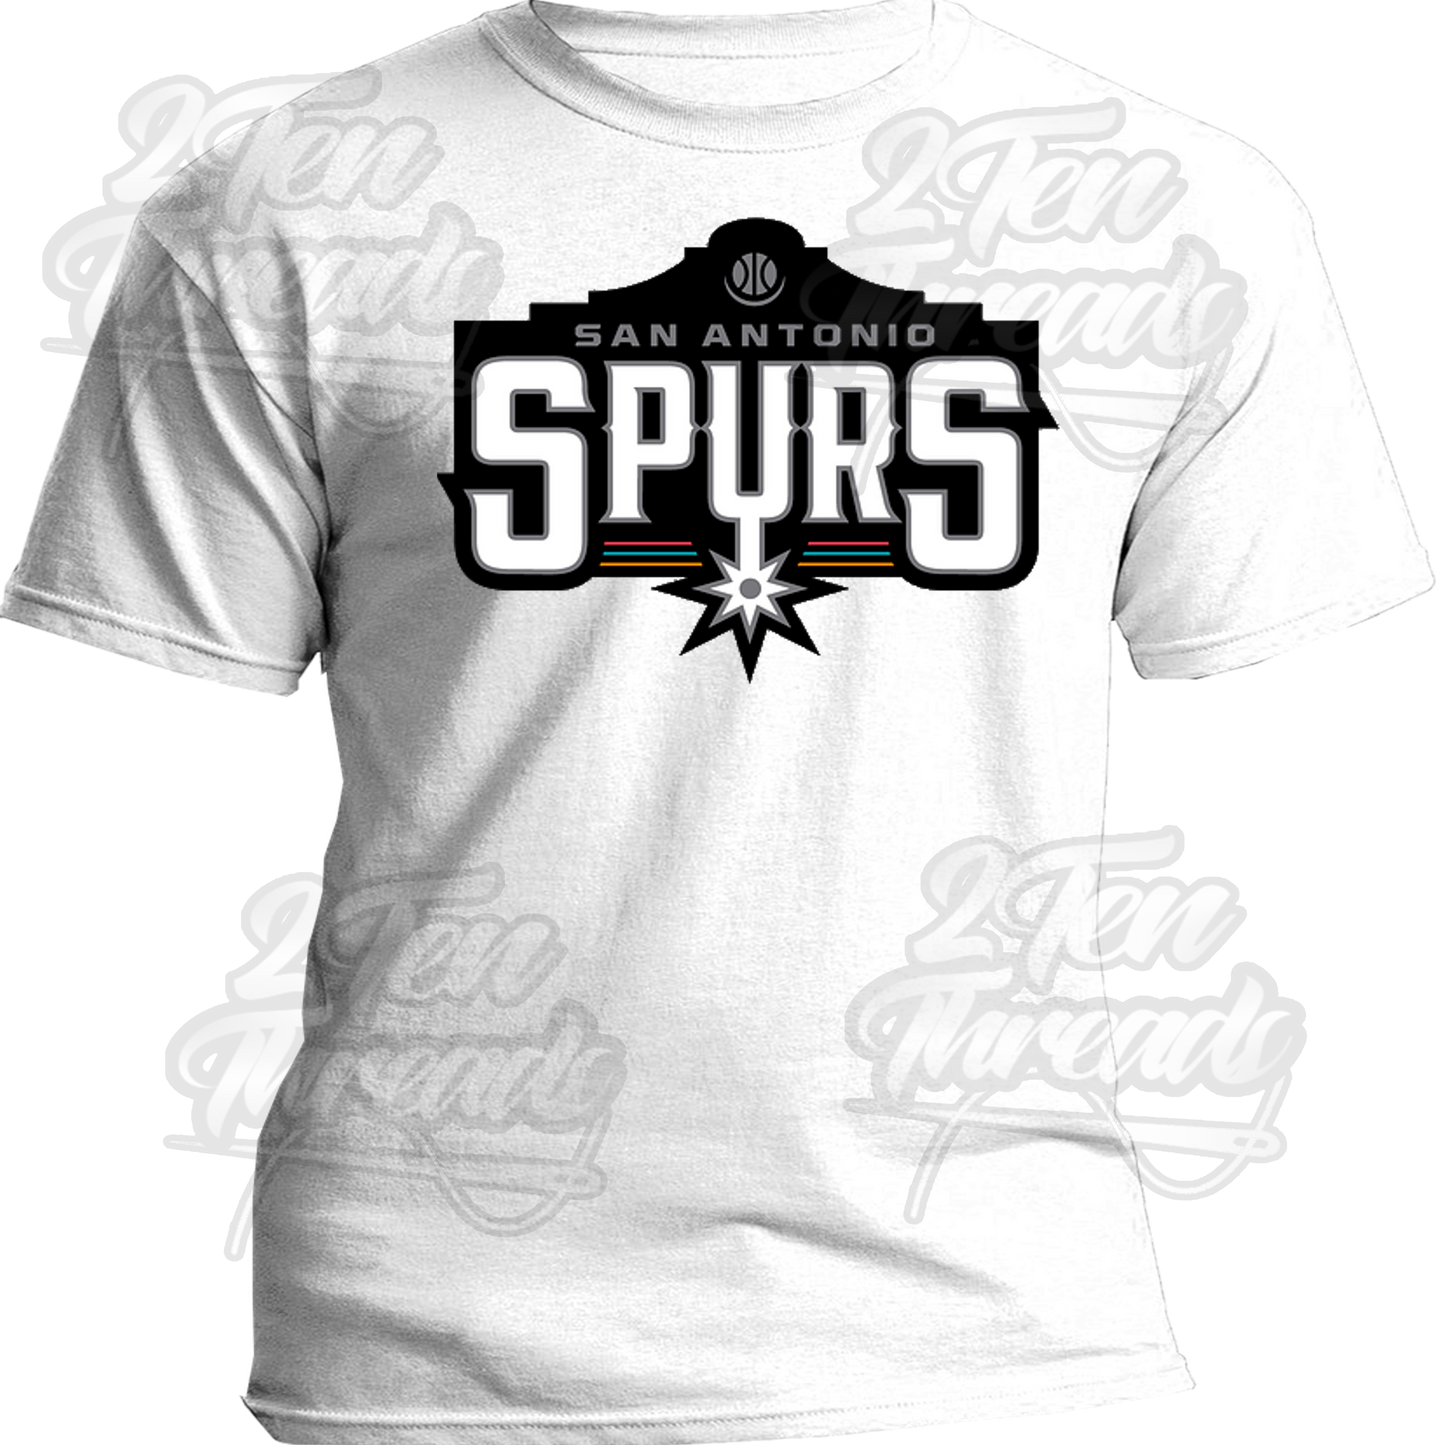 The Alamo Spurs Shirt